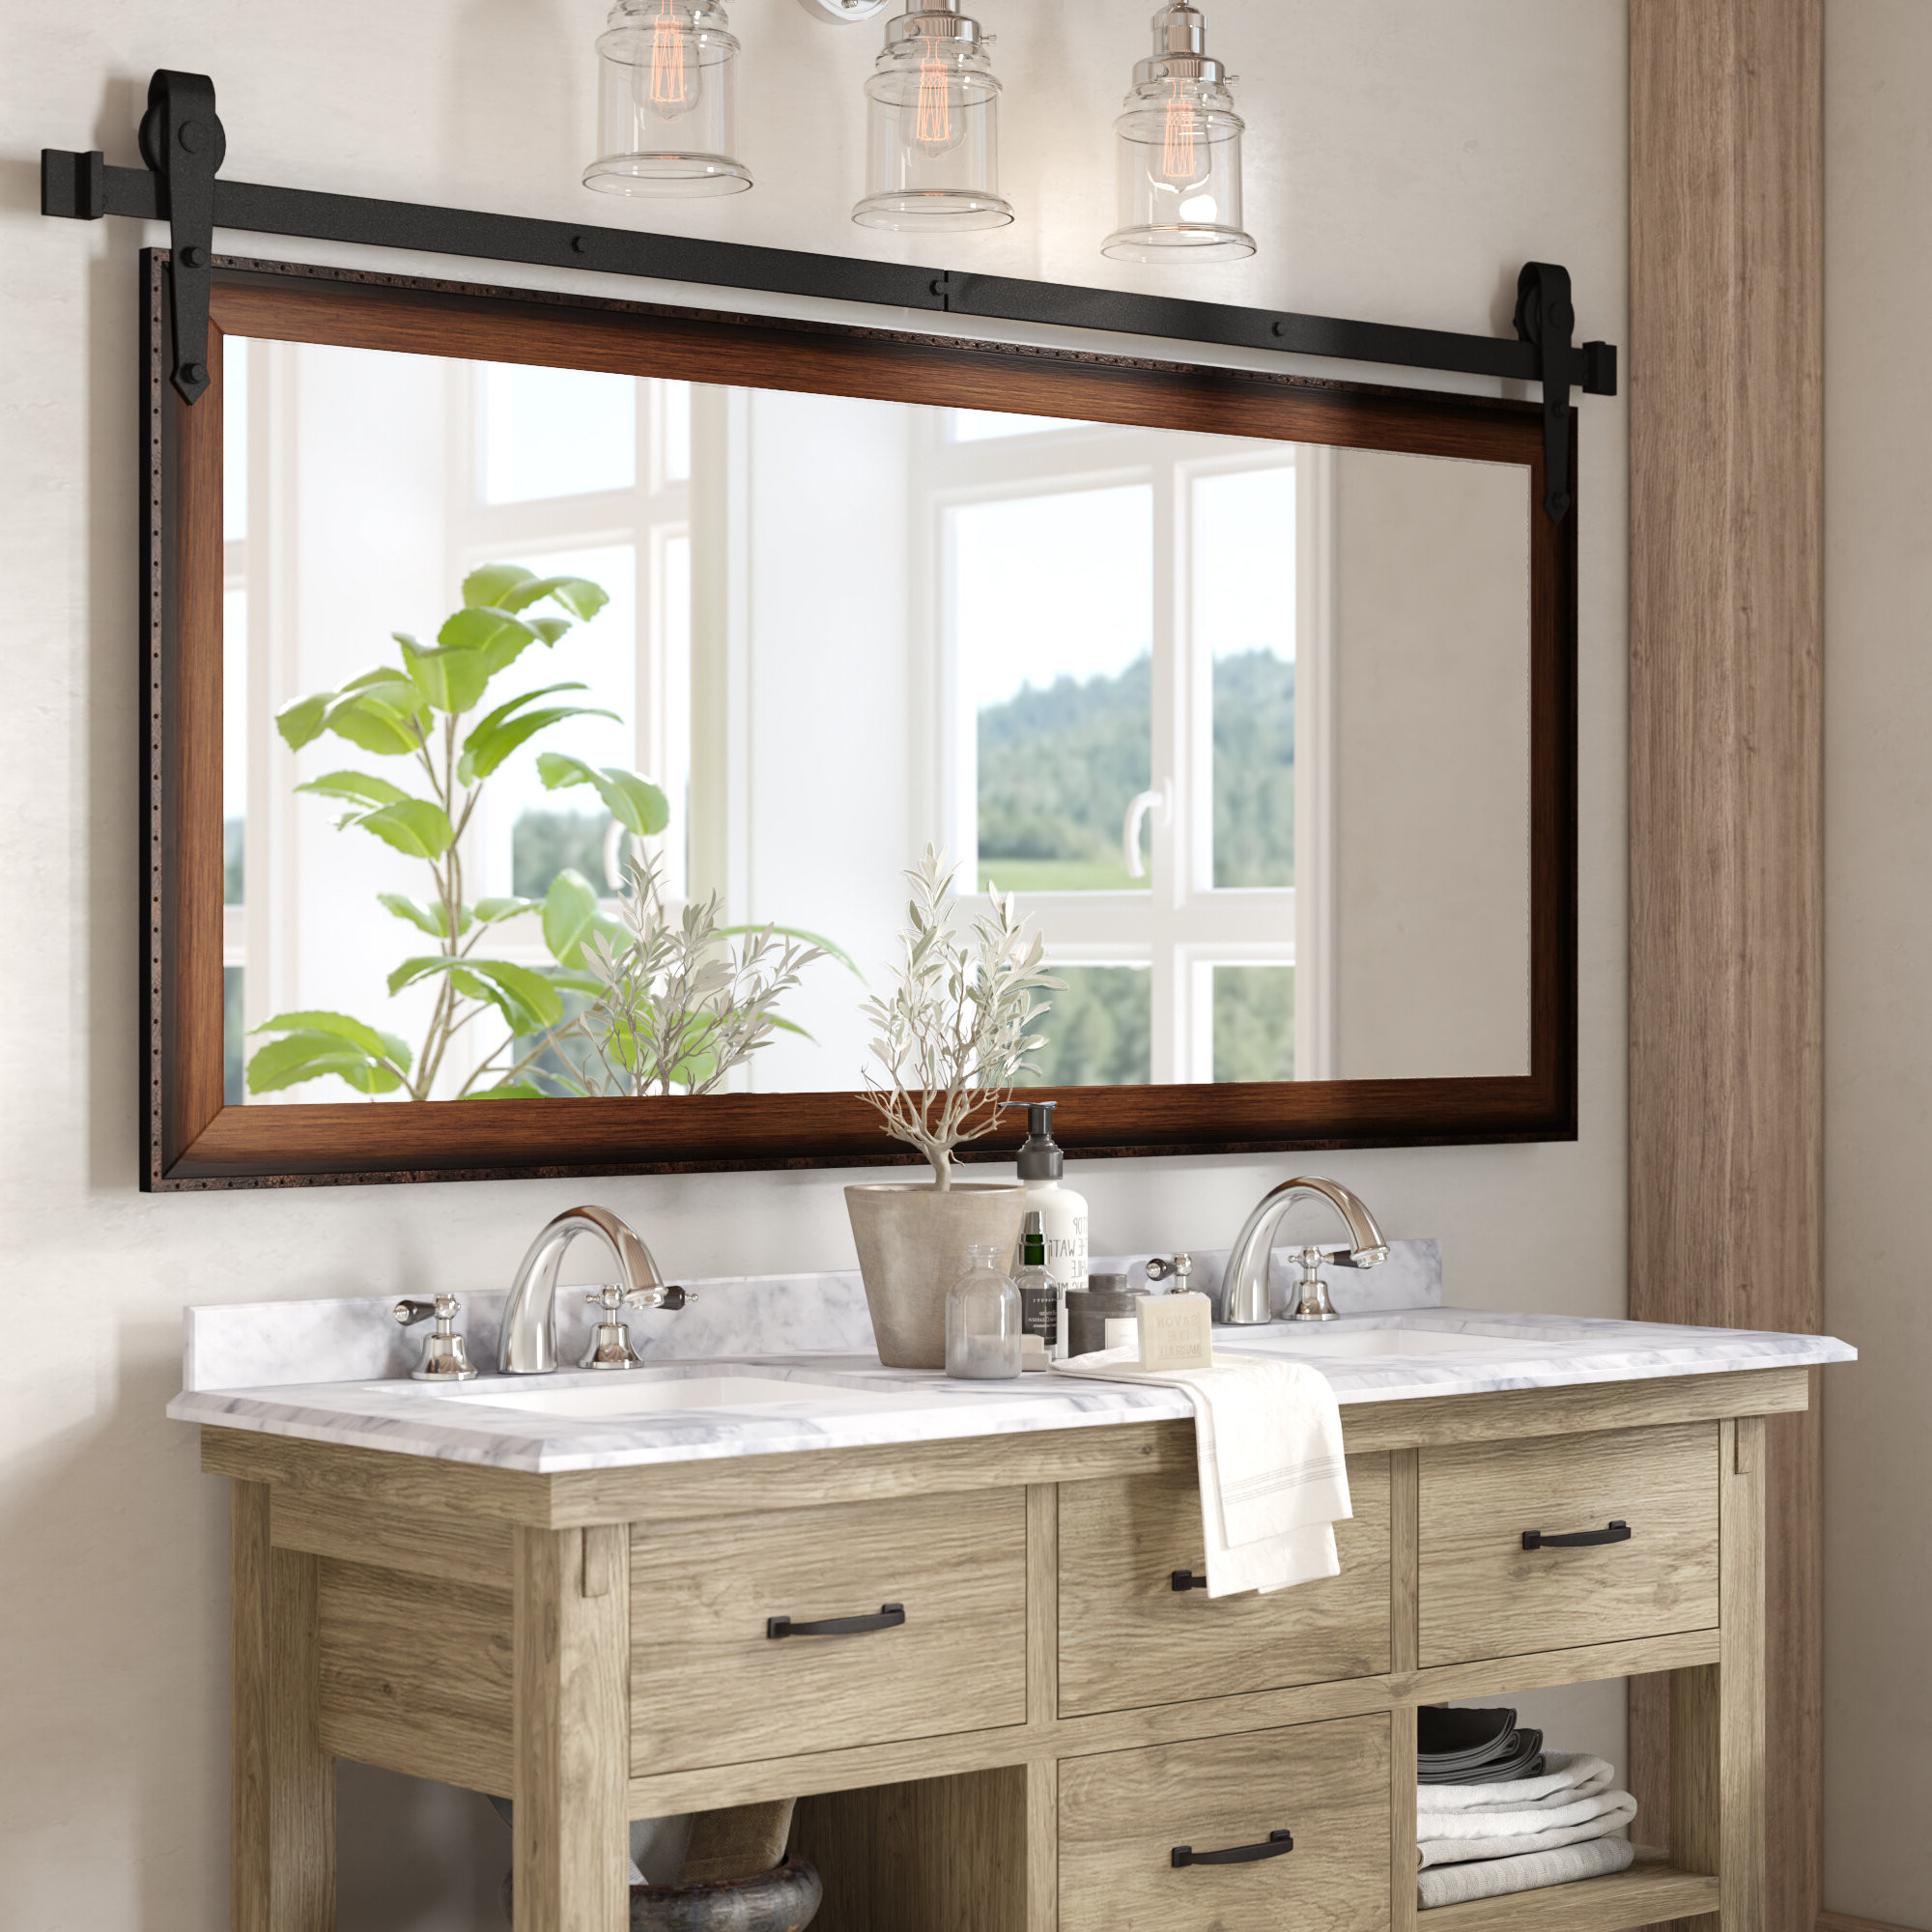 Distressed Bathroom Mirror
 20 Ideas of Landover Rustic Distressed Bathroom vanity Mirrors